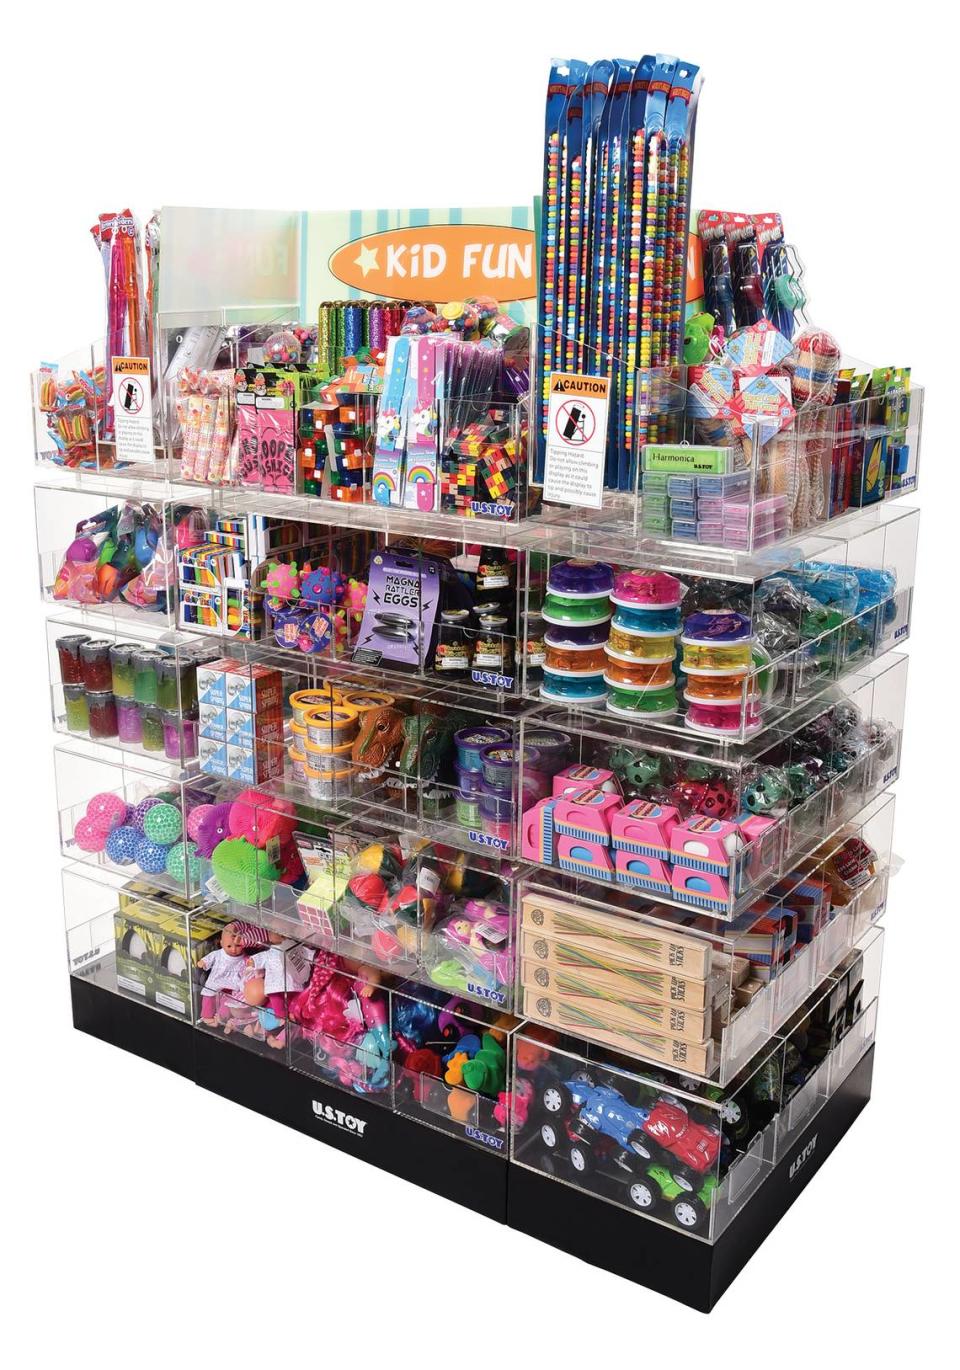 U.S. Toy Co. vende sus sus juguetes en exhibidores en tiendas minorista en todo el país.